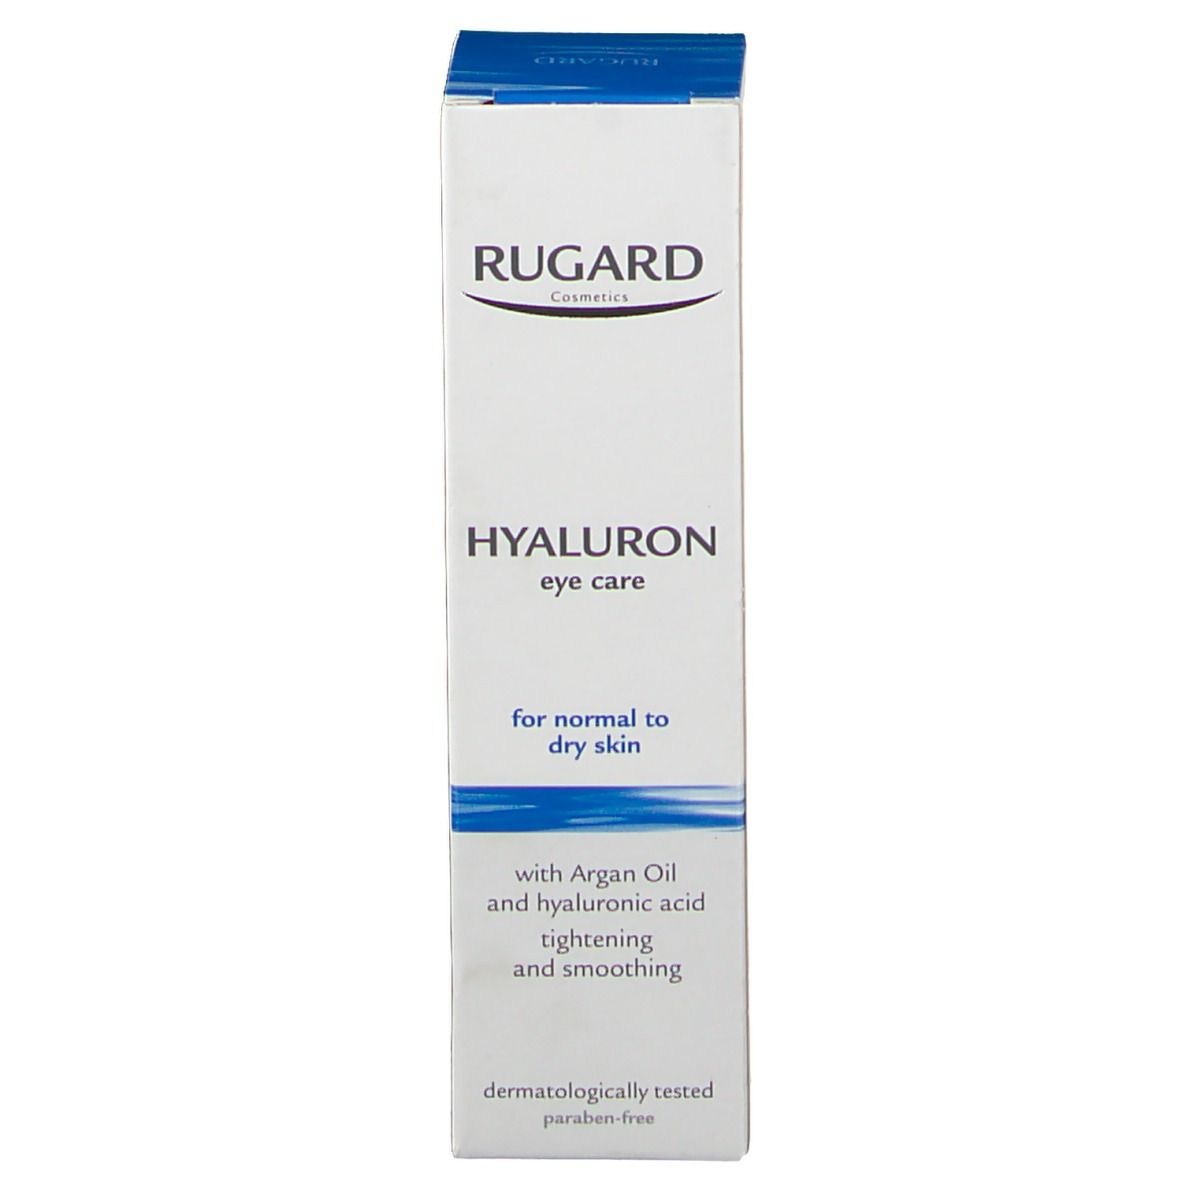 RUGARD Hyaluron Augenpflege